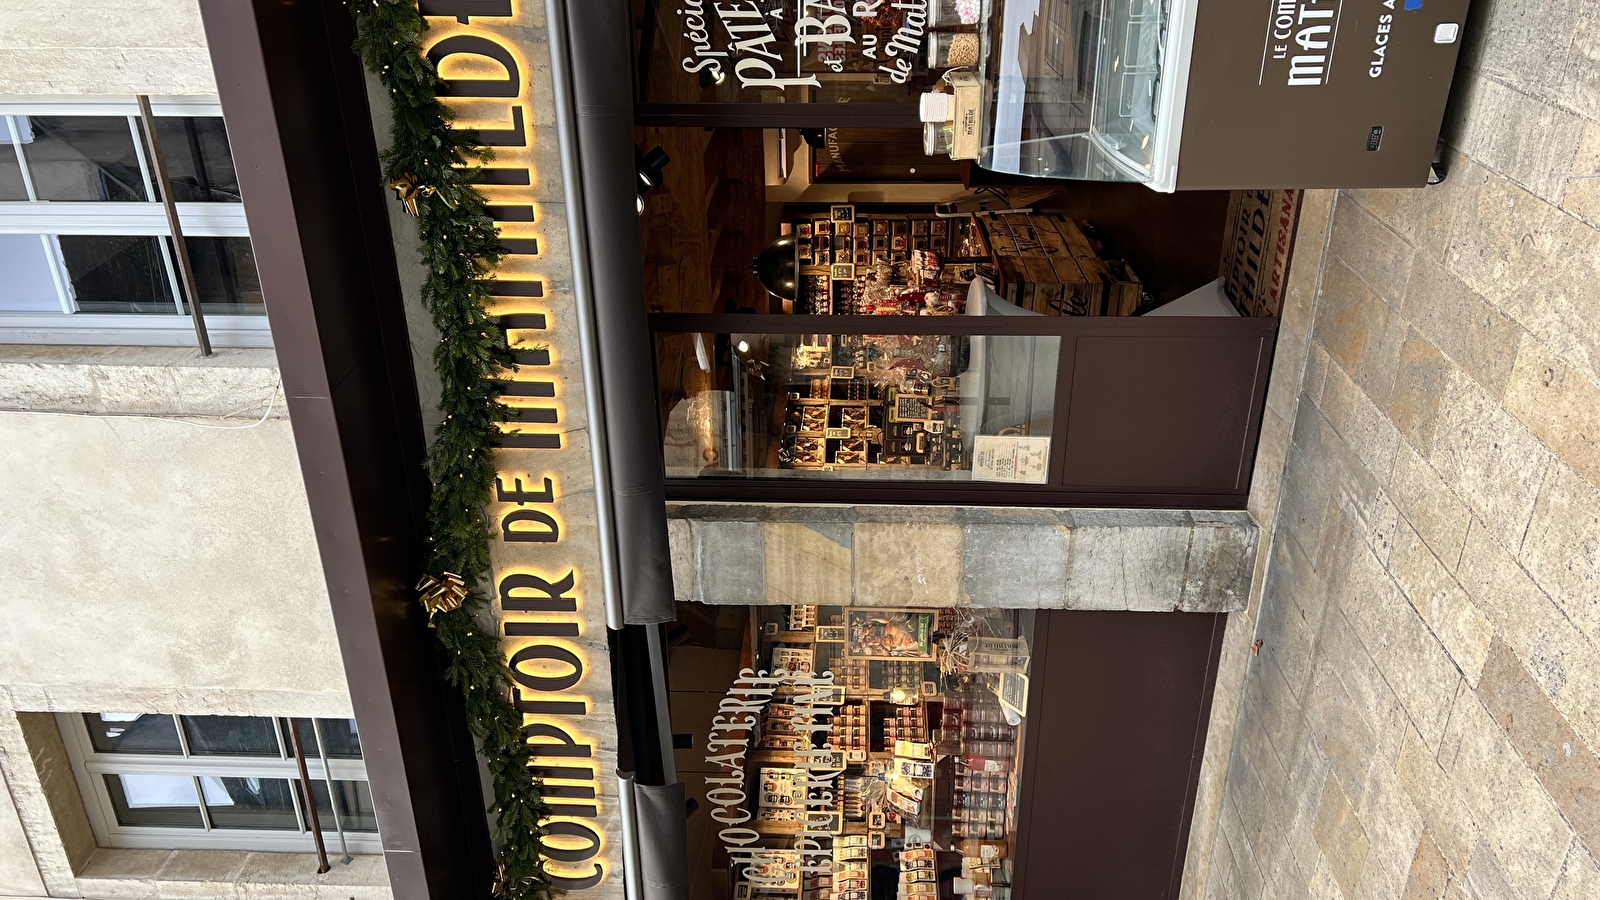 Le Comptoir de Mathilde ouvre une nouvelle boutique à Dijon